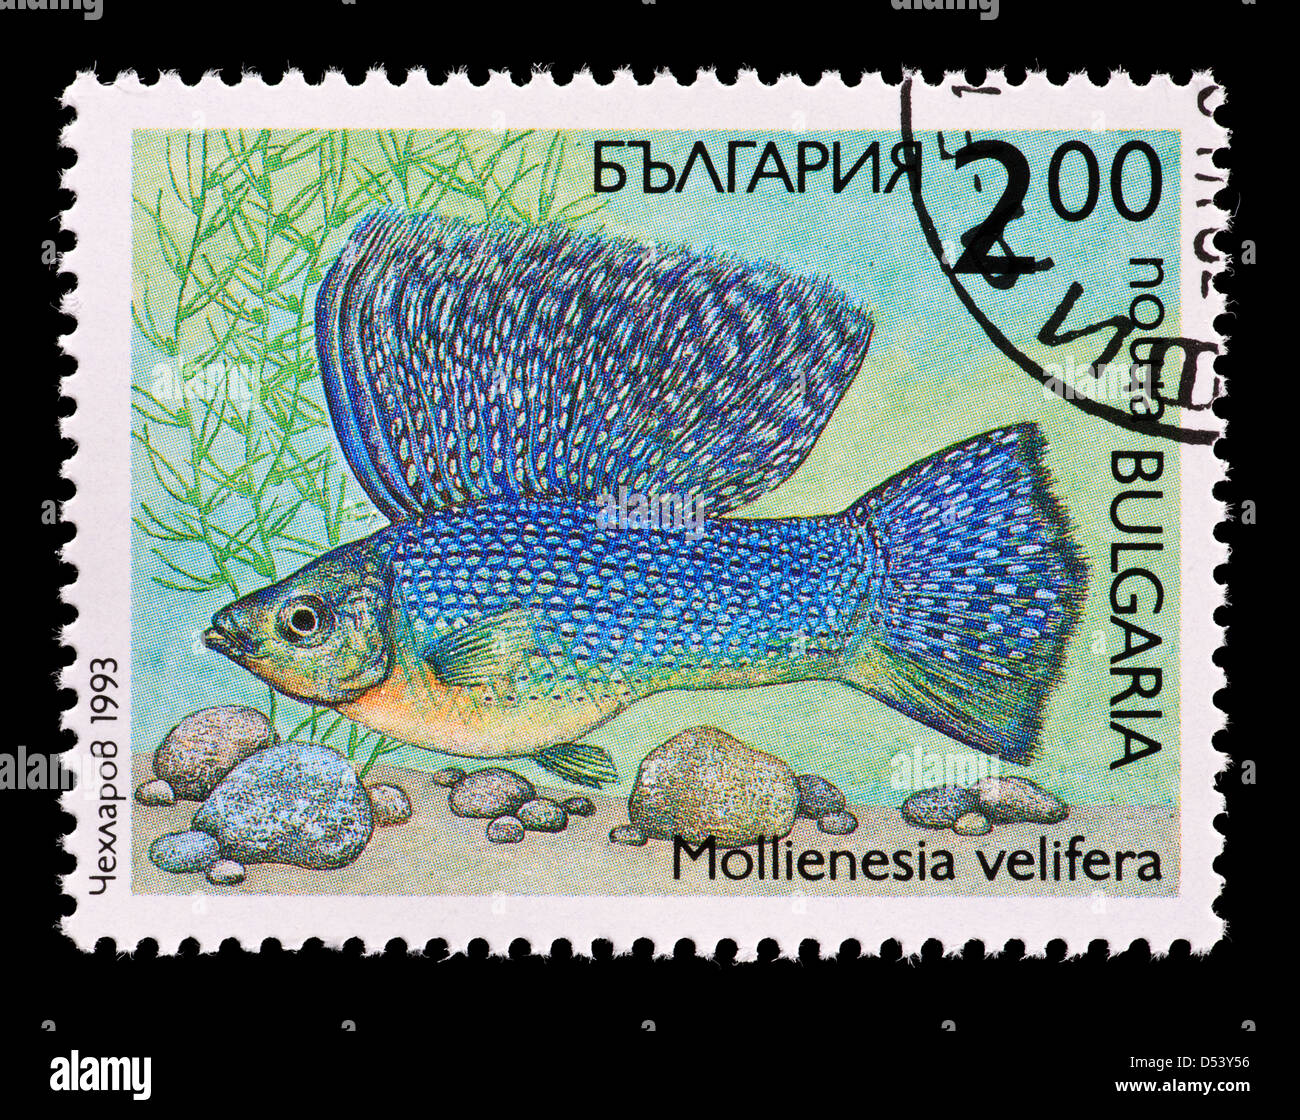 Briefmarke aus Bulgarien, die Darstellung eines tropischen Fisches Molly (Poecilia Velifera) Stockfoto